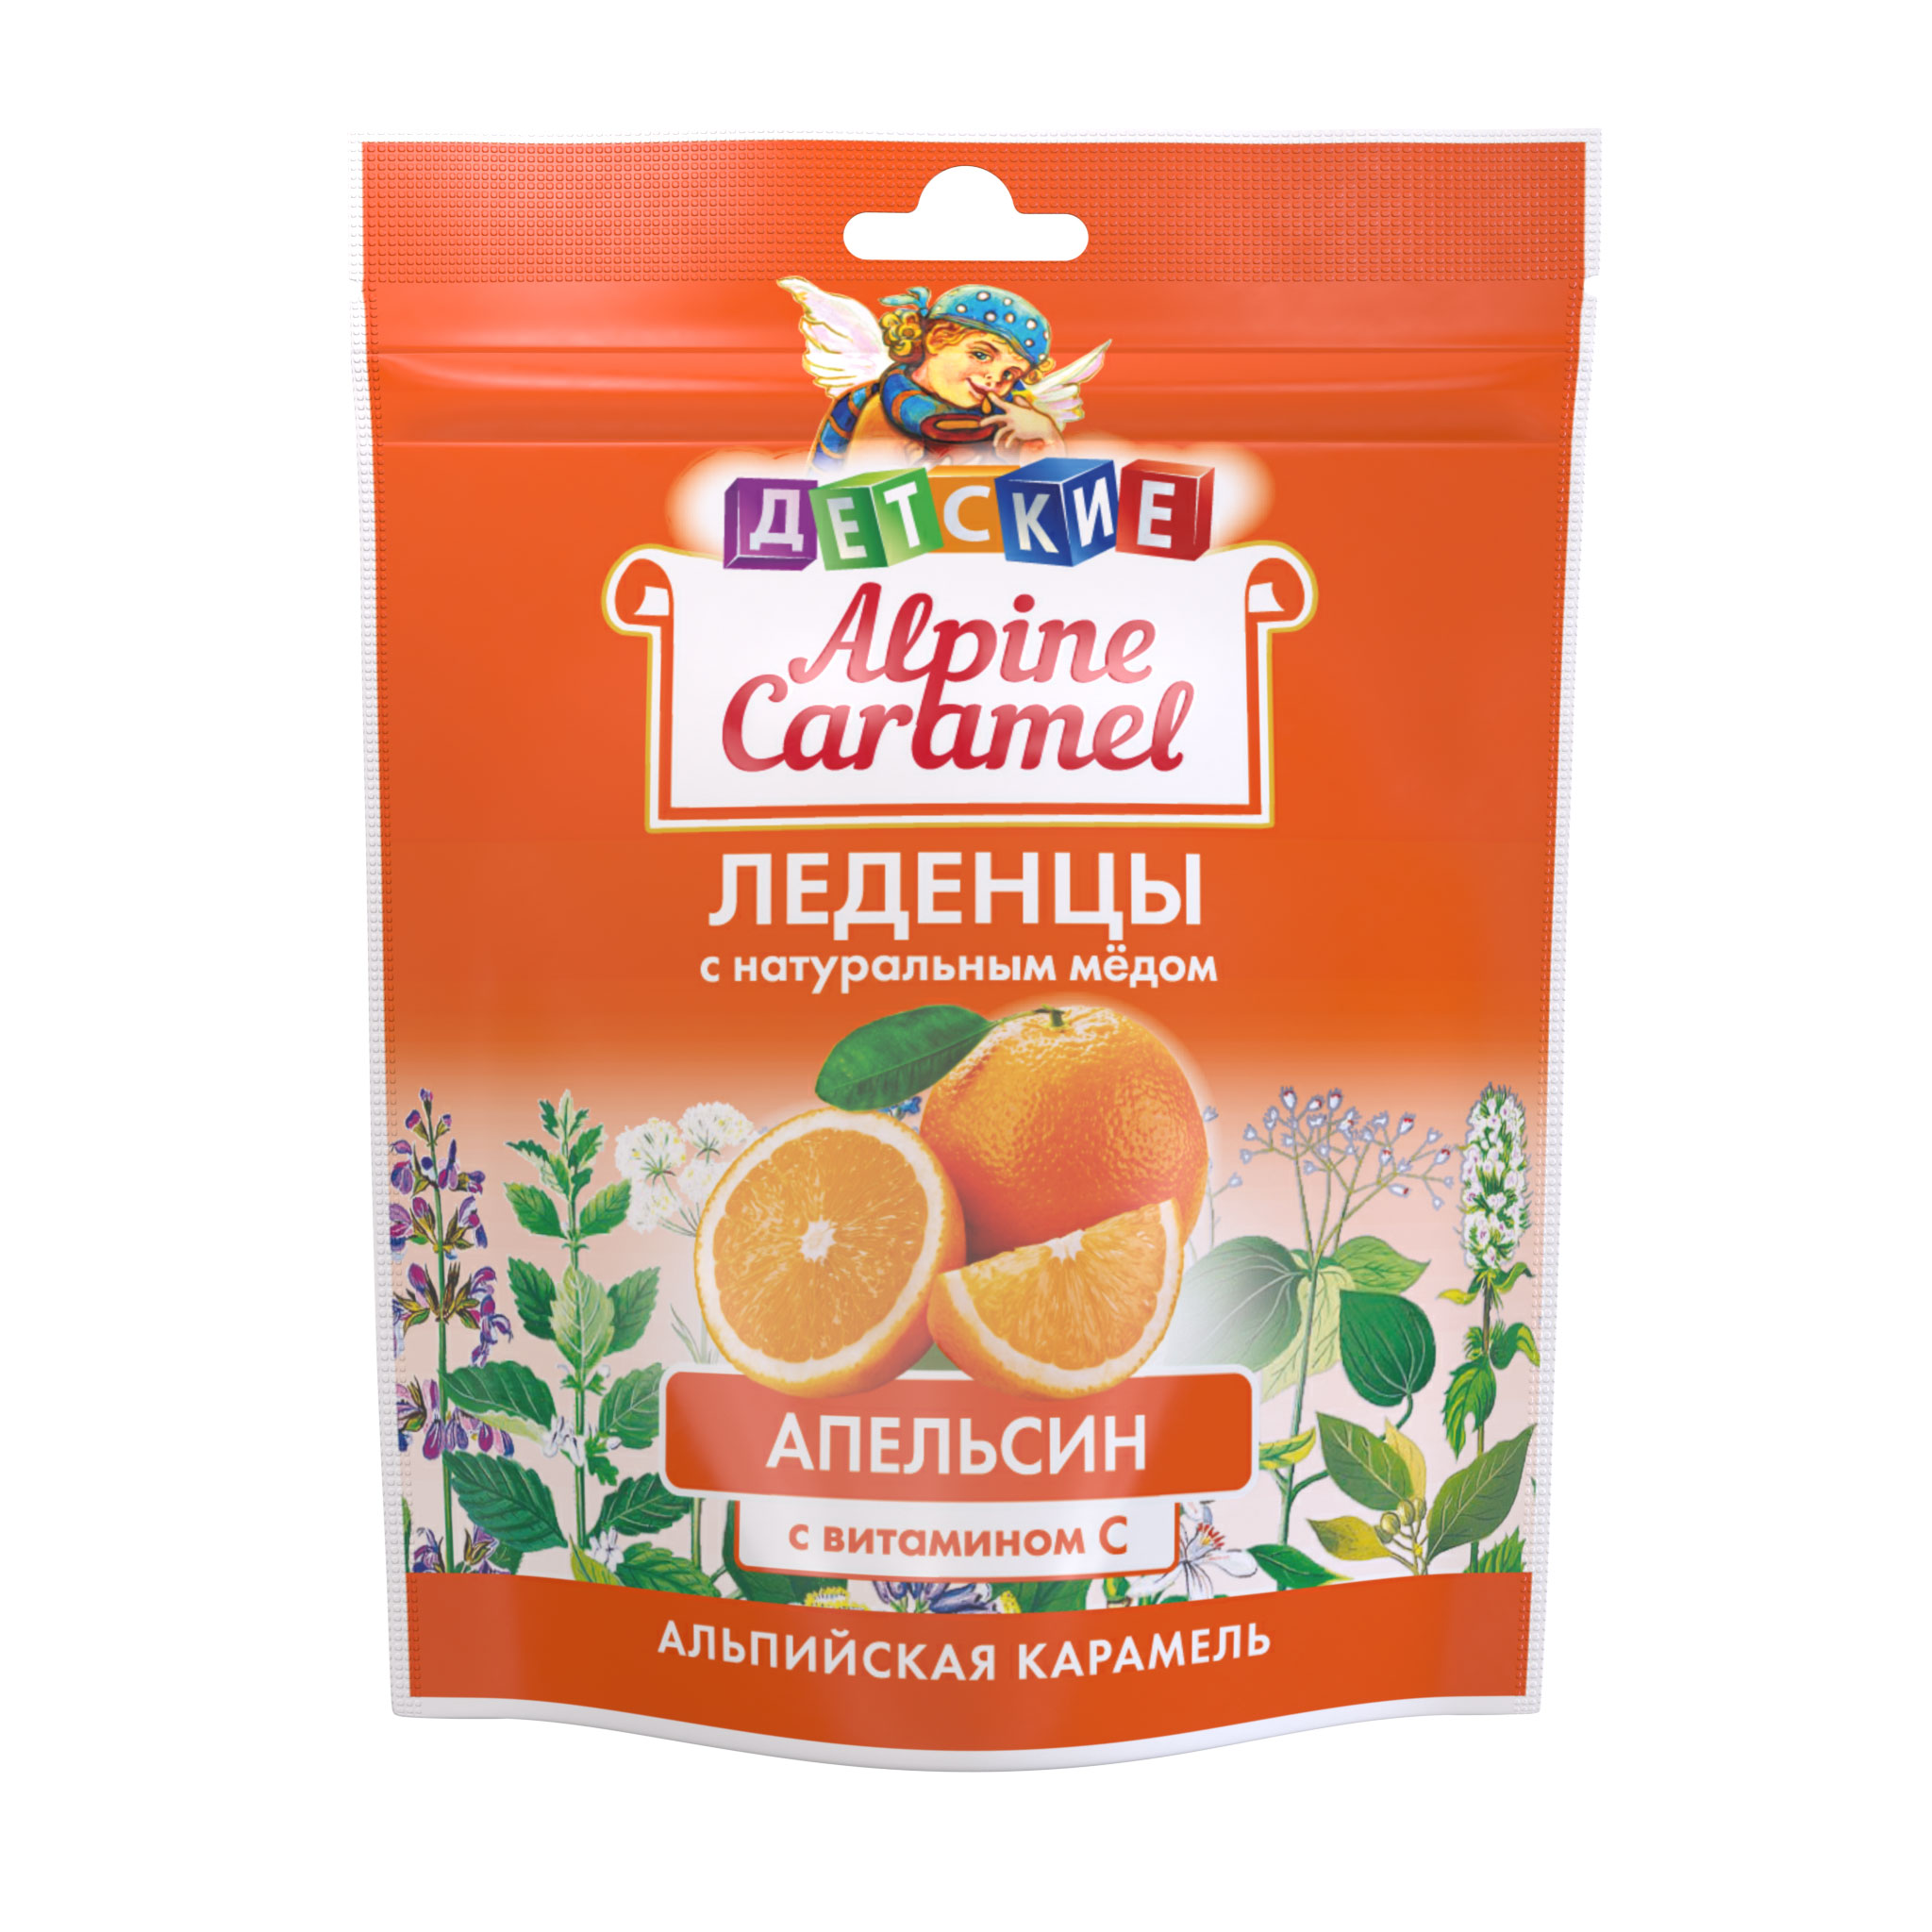 Альпийская карамель леденцы детские с натуральным медом и витамином С вкус апельсин 75г